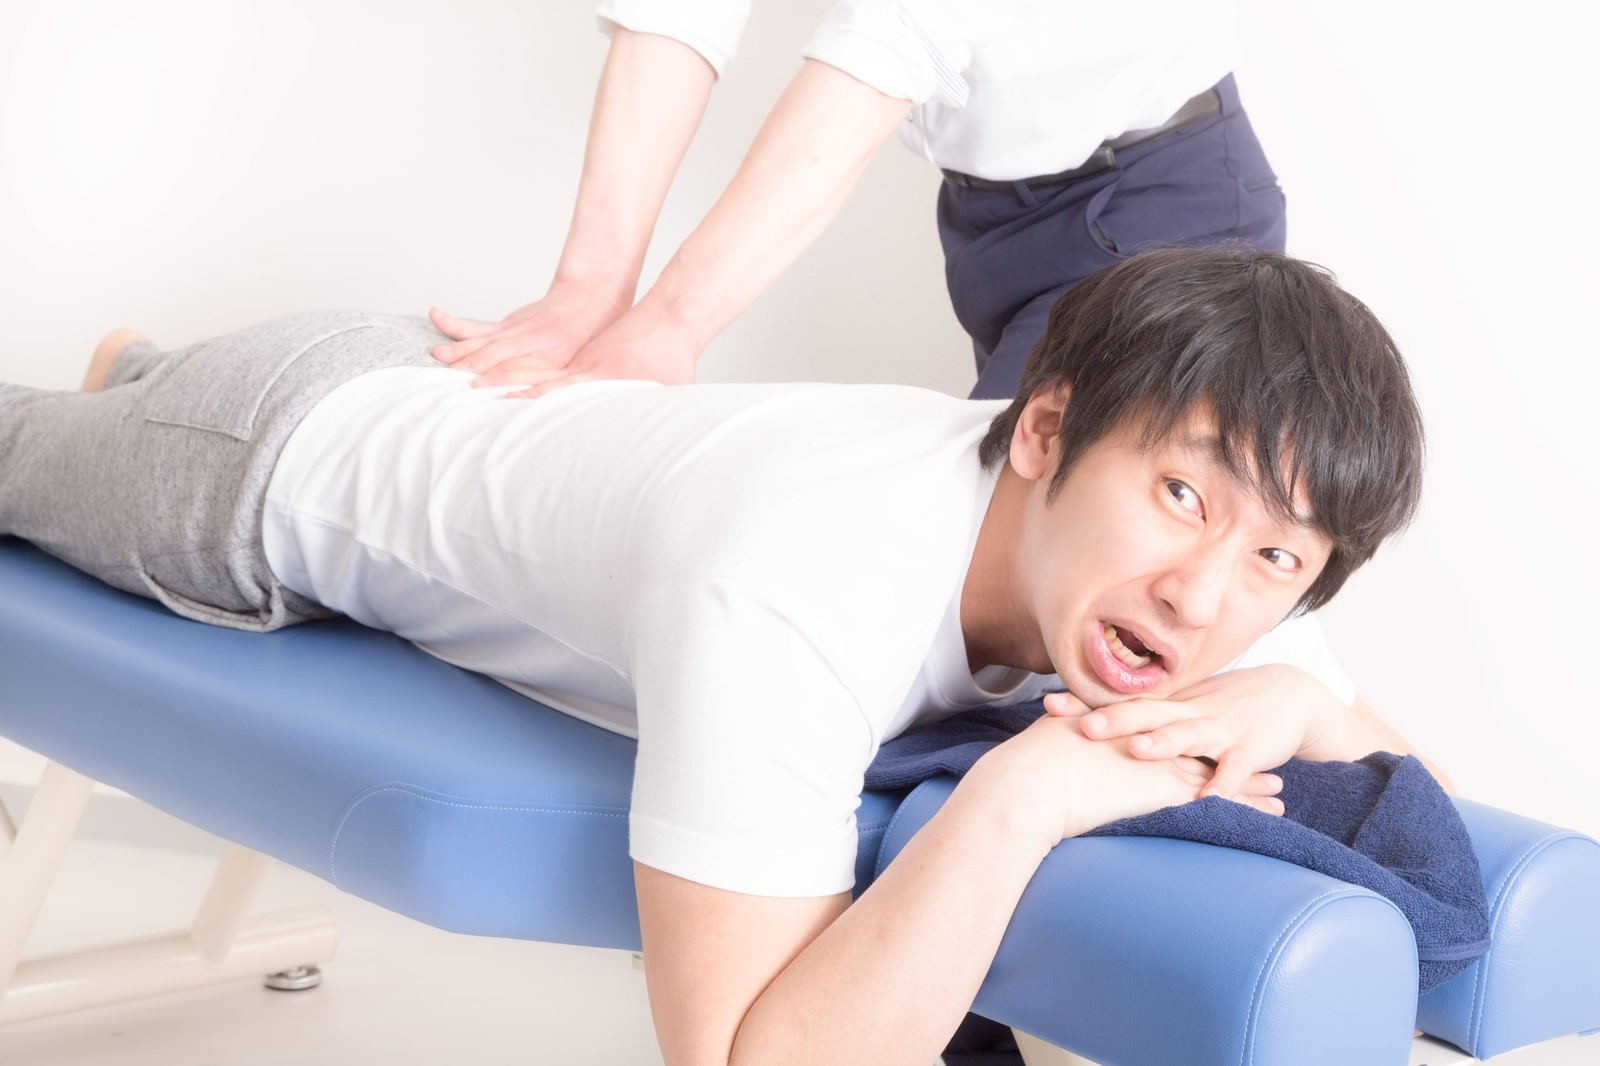 介護技術を身に付けて腰痛を防止しよう